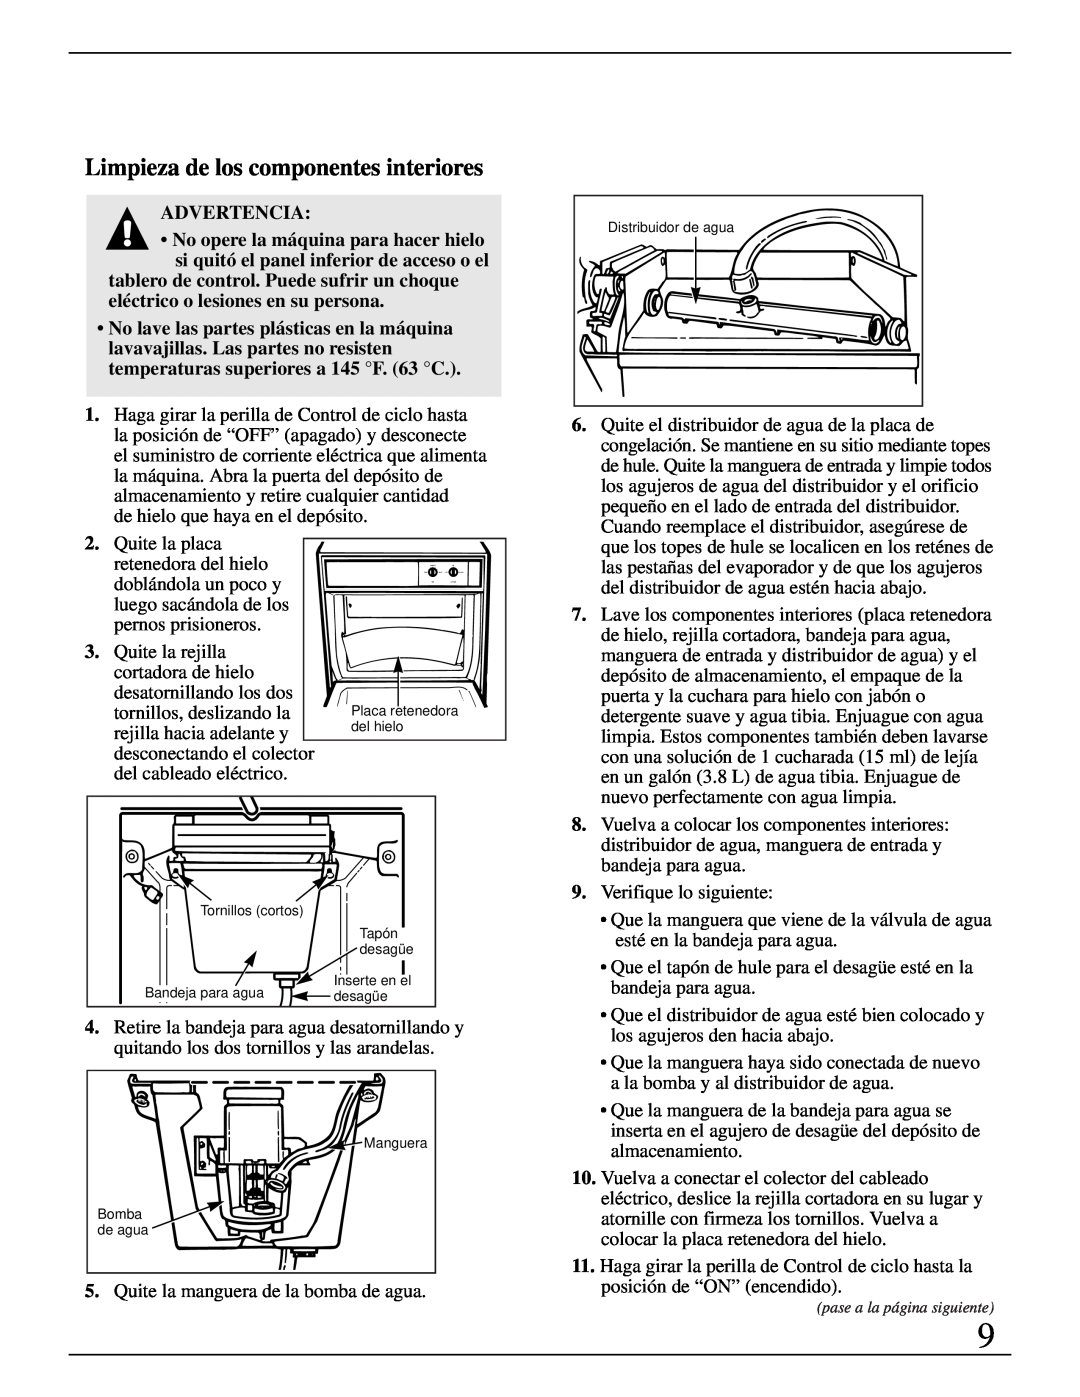 GE Monogram ZDIB50 Limpieza de los componentes interiores, Advertencia, Que la manguera que viene de la válvula de agua 